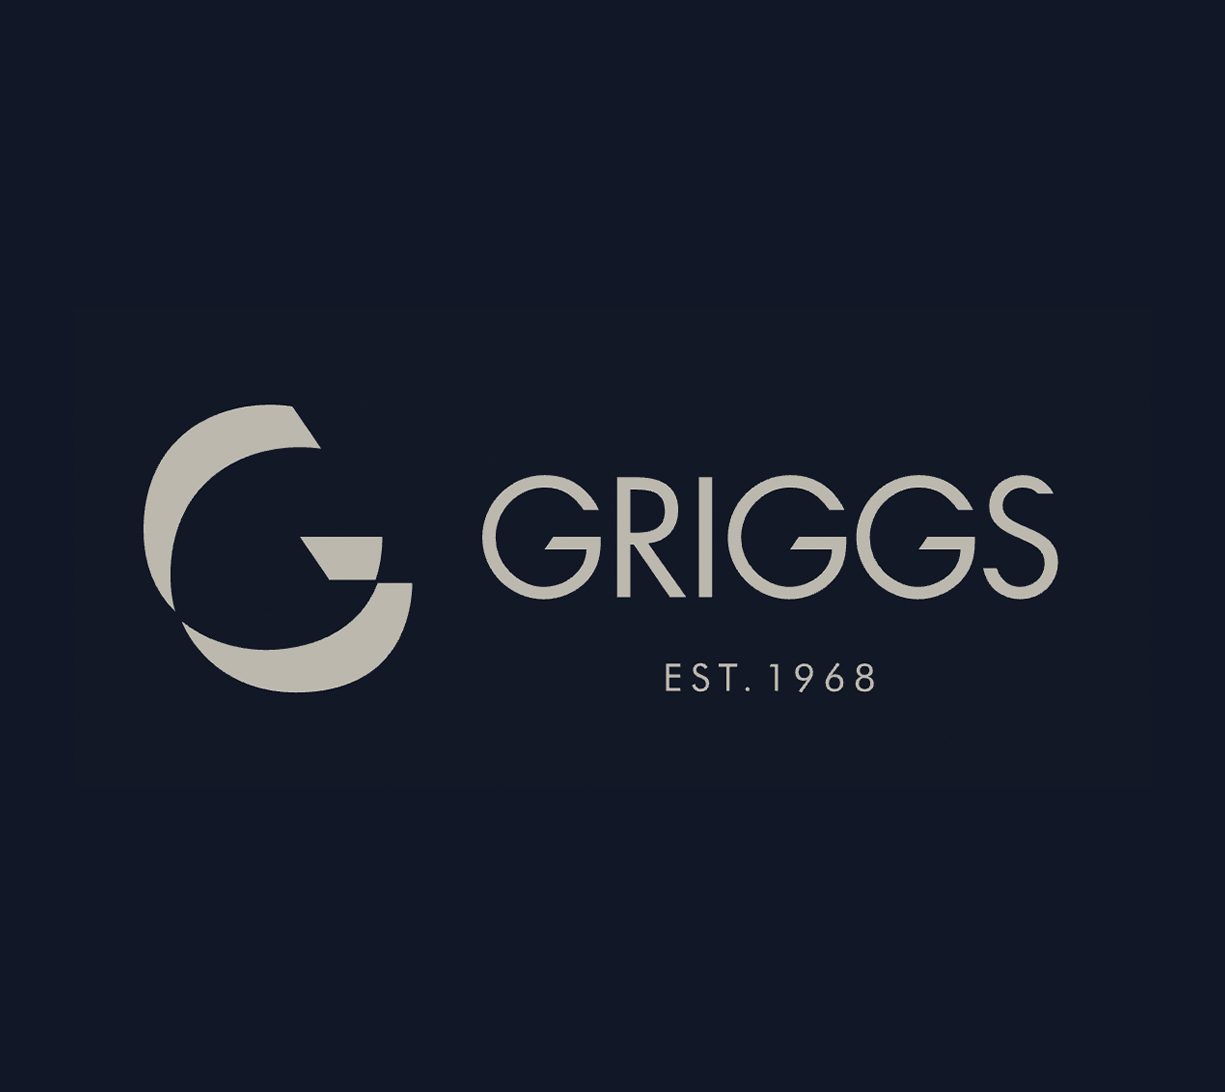 Griggs-logo